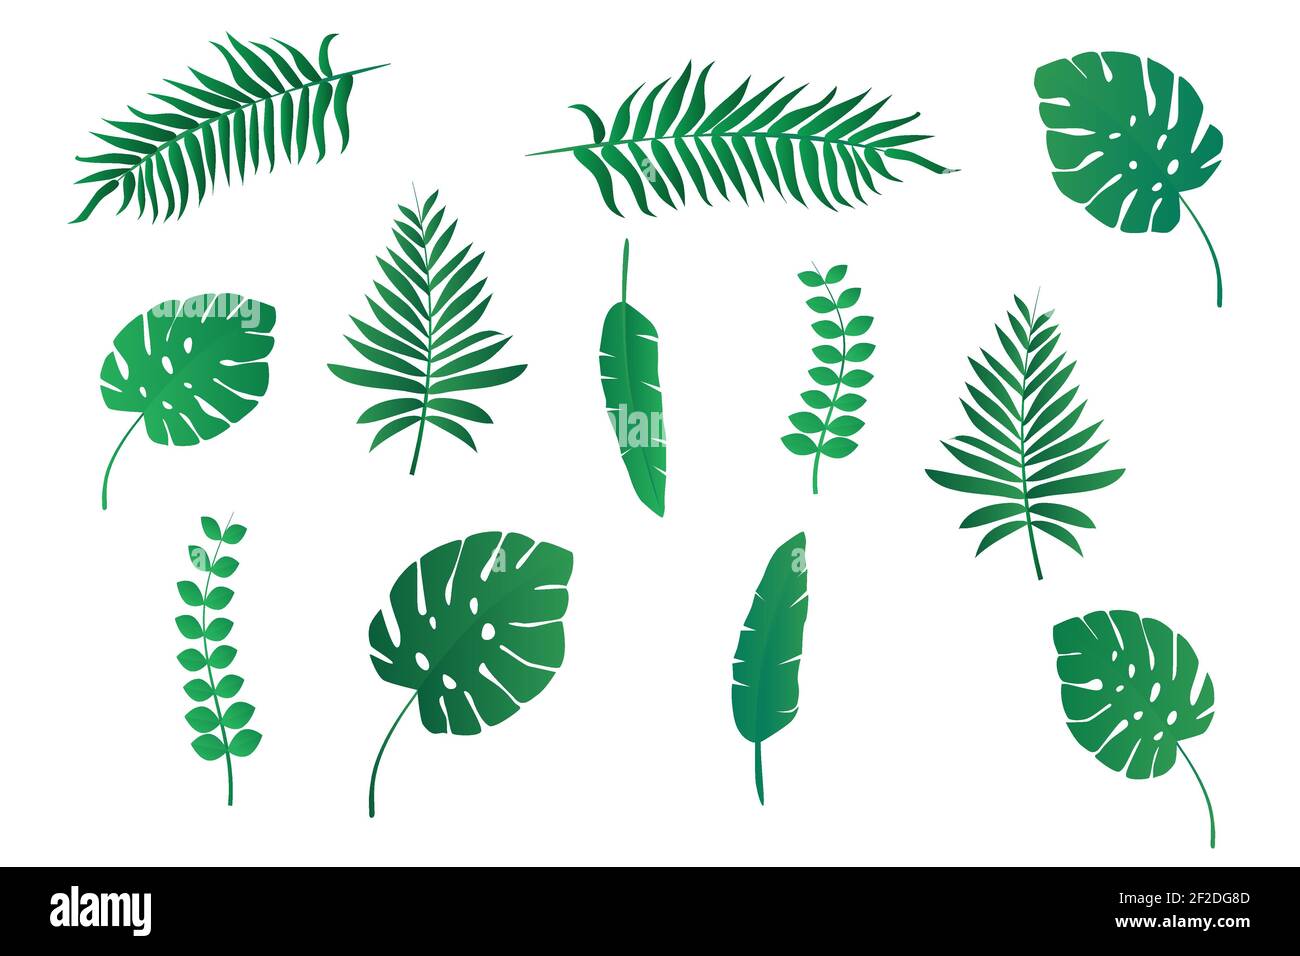 Collezioni di foglie di palma e piante tropicali isolate su sfondo bianco per la progettazione. Illustrazione vettoriale piatta Illustrazione Vettoriale